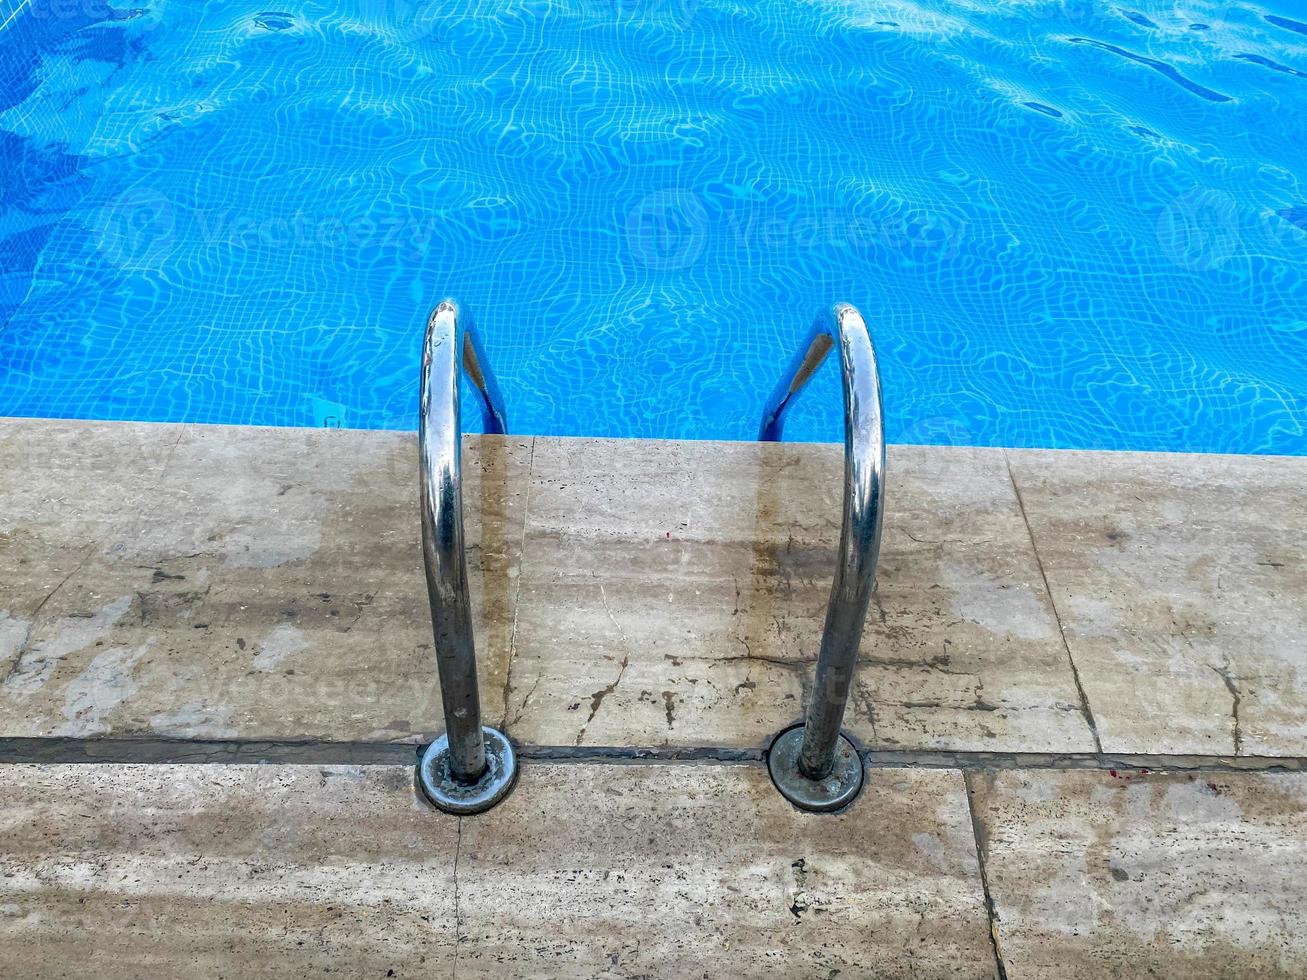 escalier en métal chromé avec garde-corps pour descendre dans la piscine pour nager et se baigner avec de l'eau claire et chaude et bleue dans un hôtel situé dans un complexe paradisiaque tropical photo